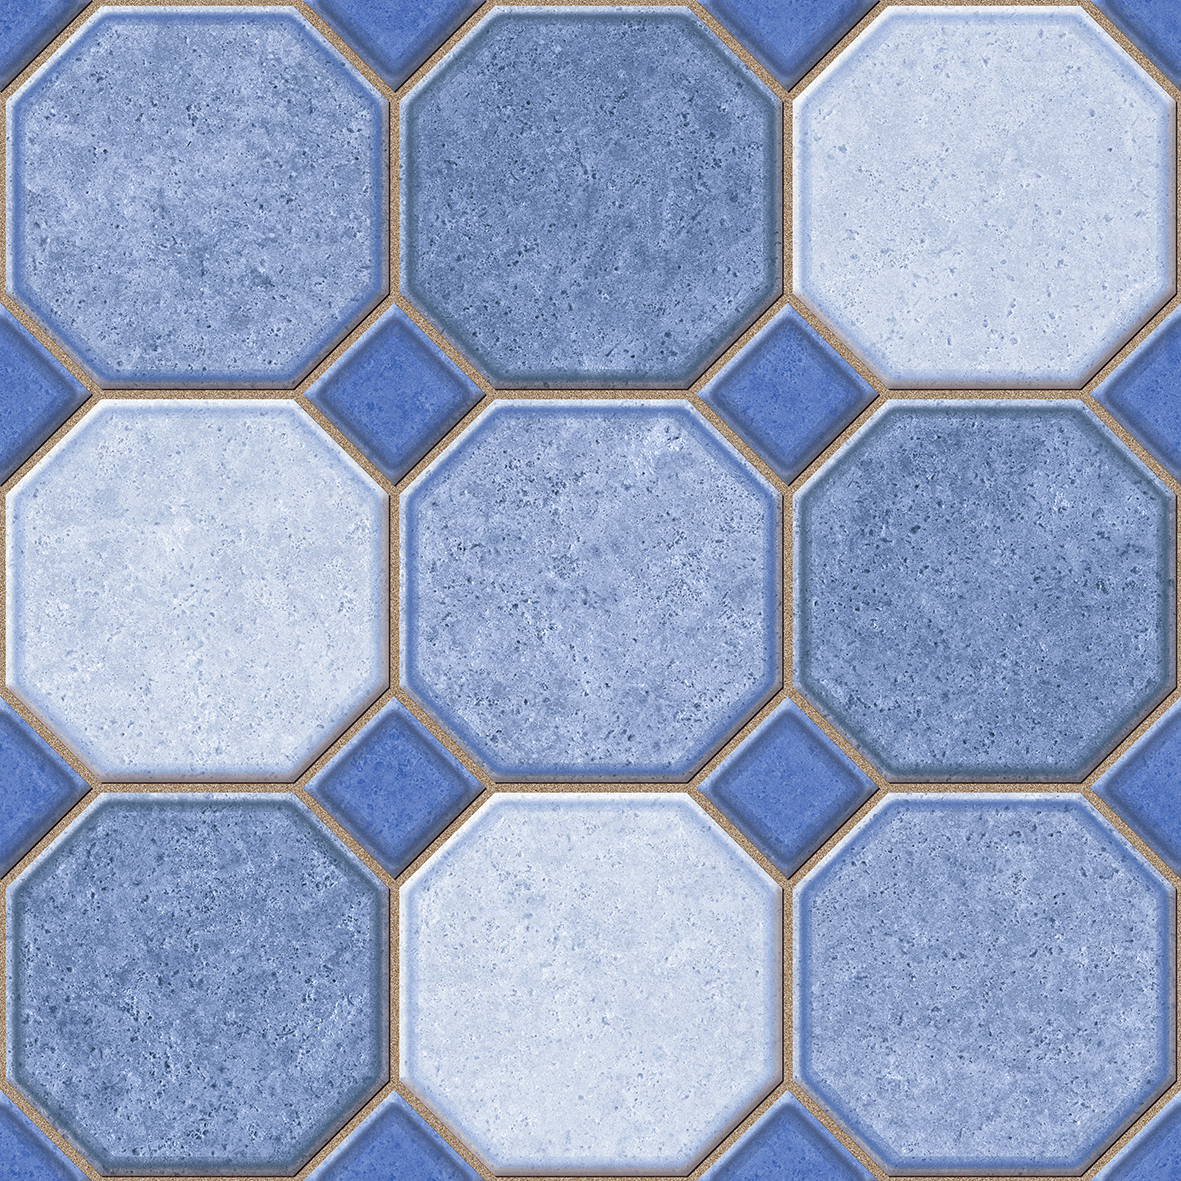 Blue Tiles for Balcony Tiles